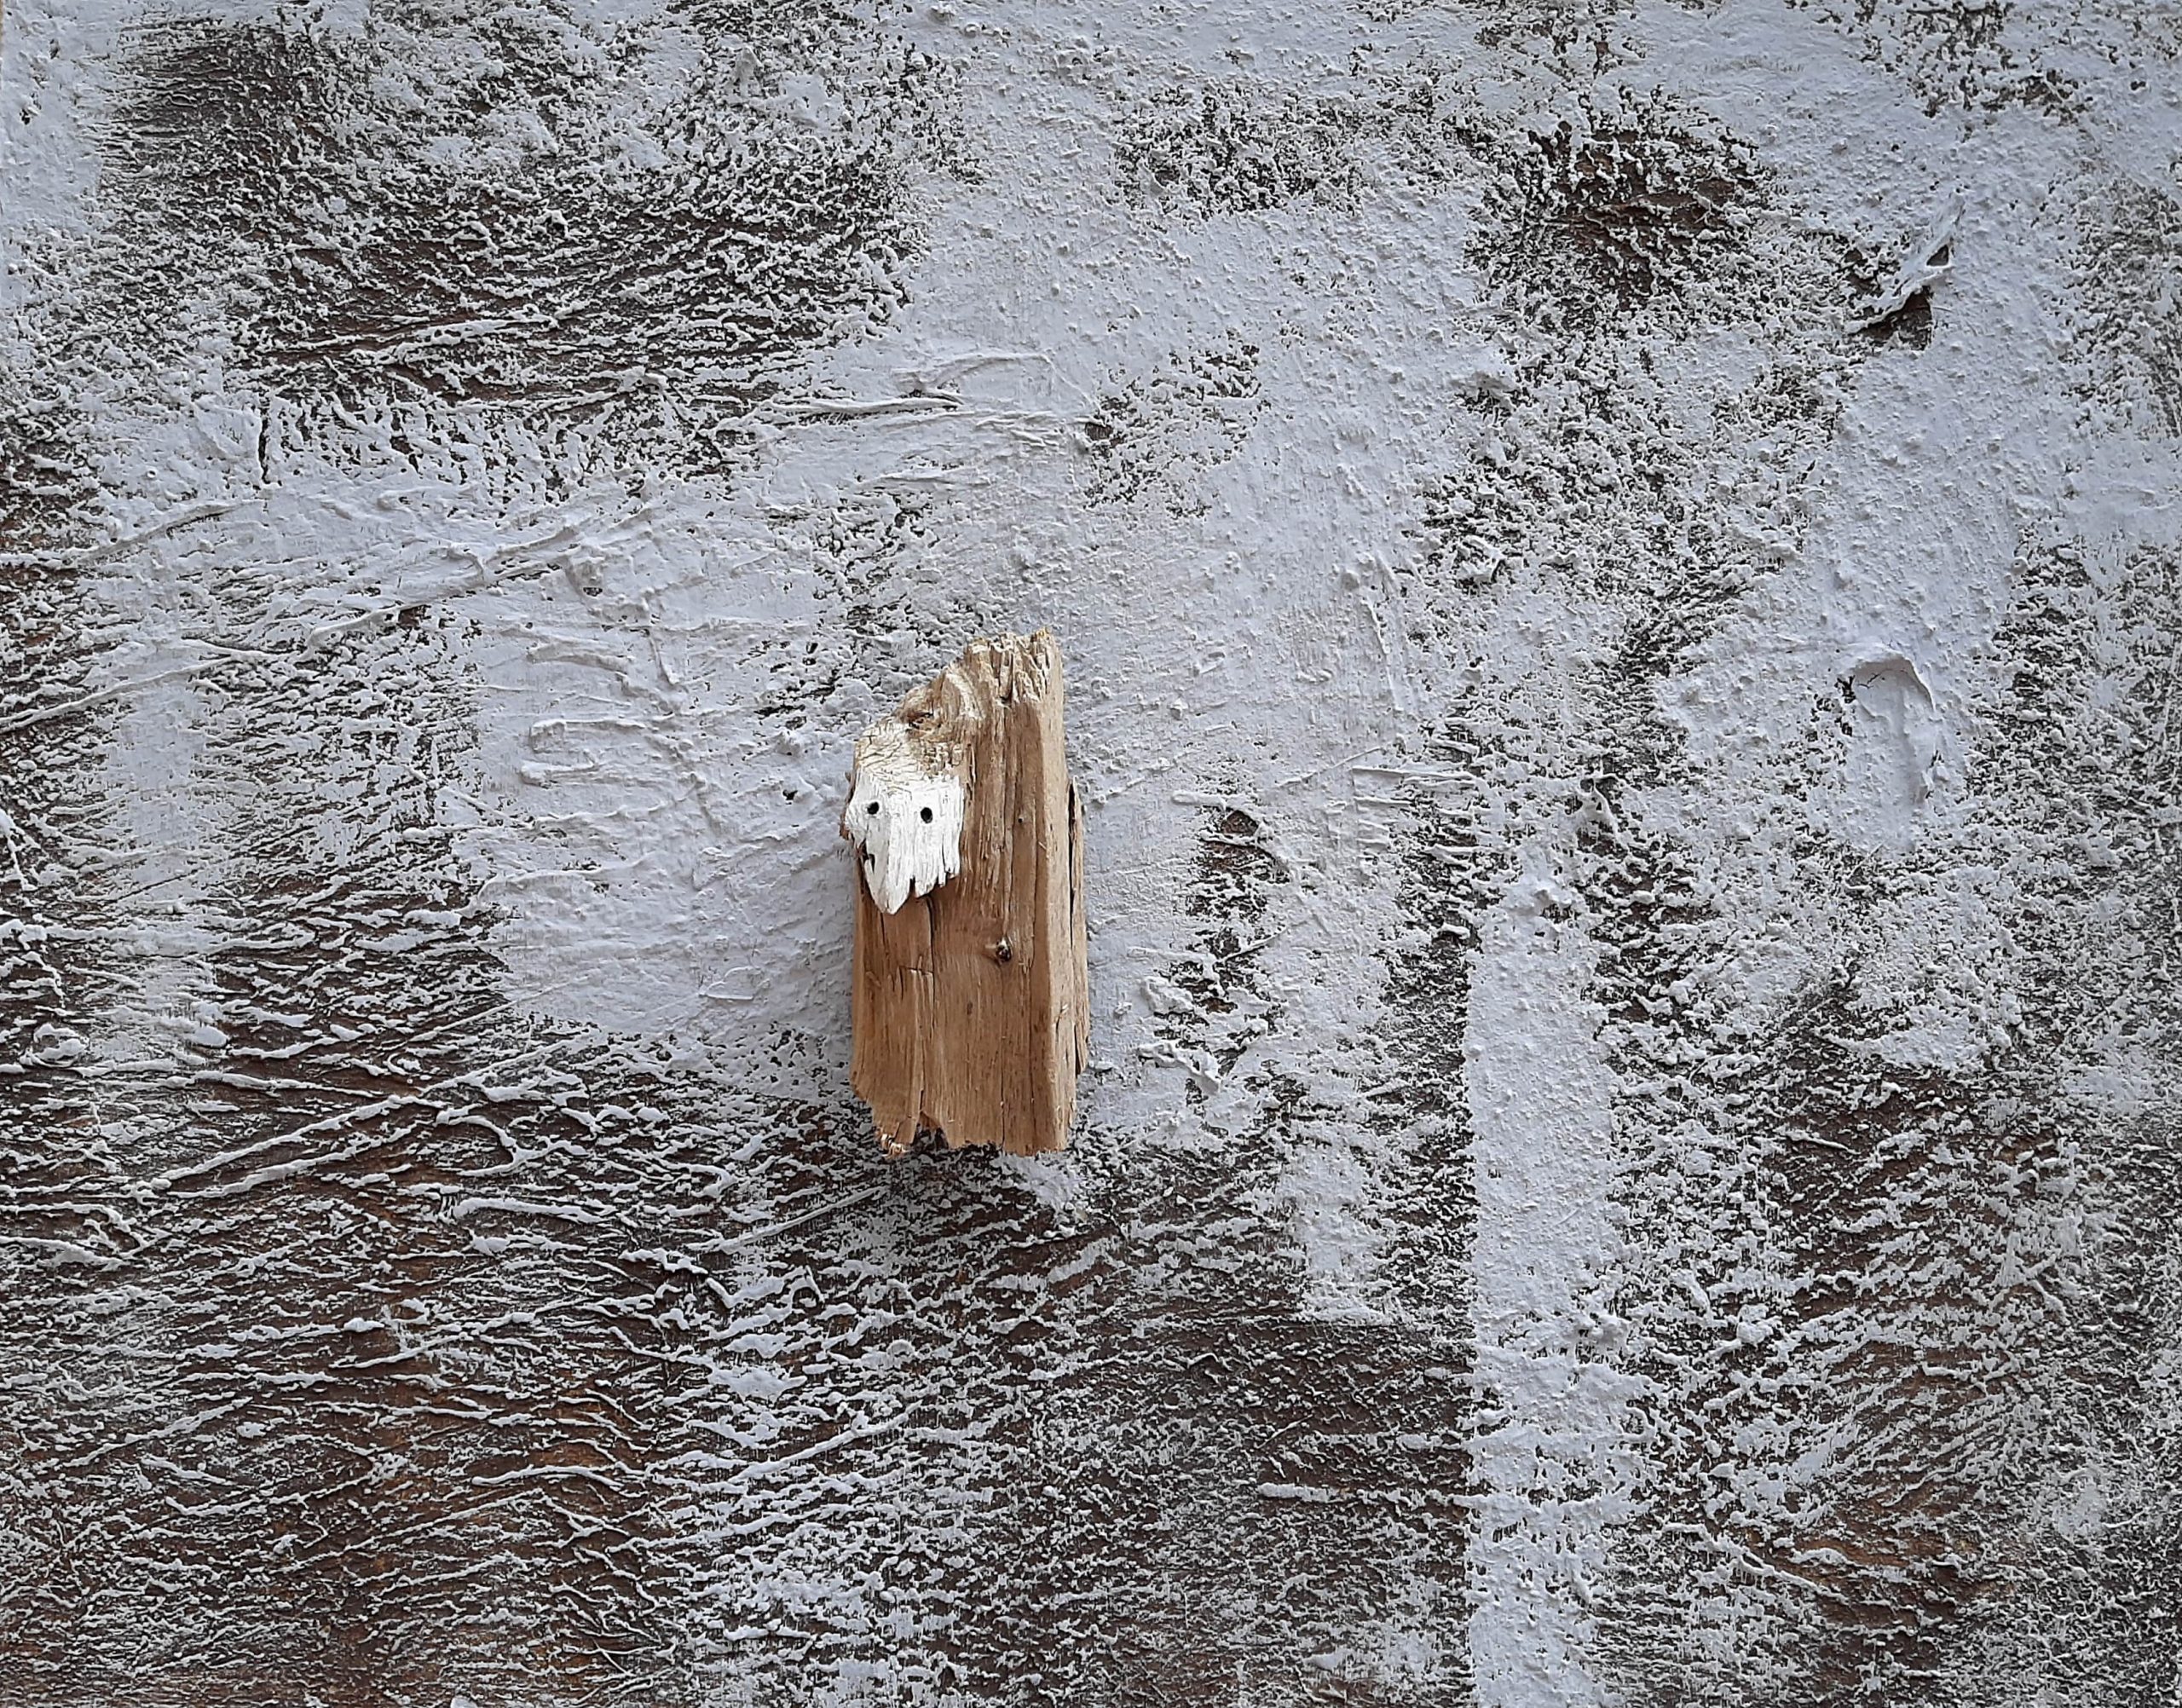 Roberto PagnaniXoanontecnica mista su tela con applicazione in legno 80x100 cm2020